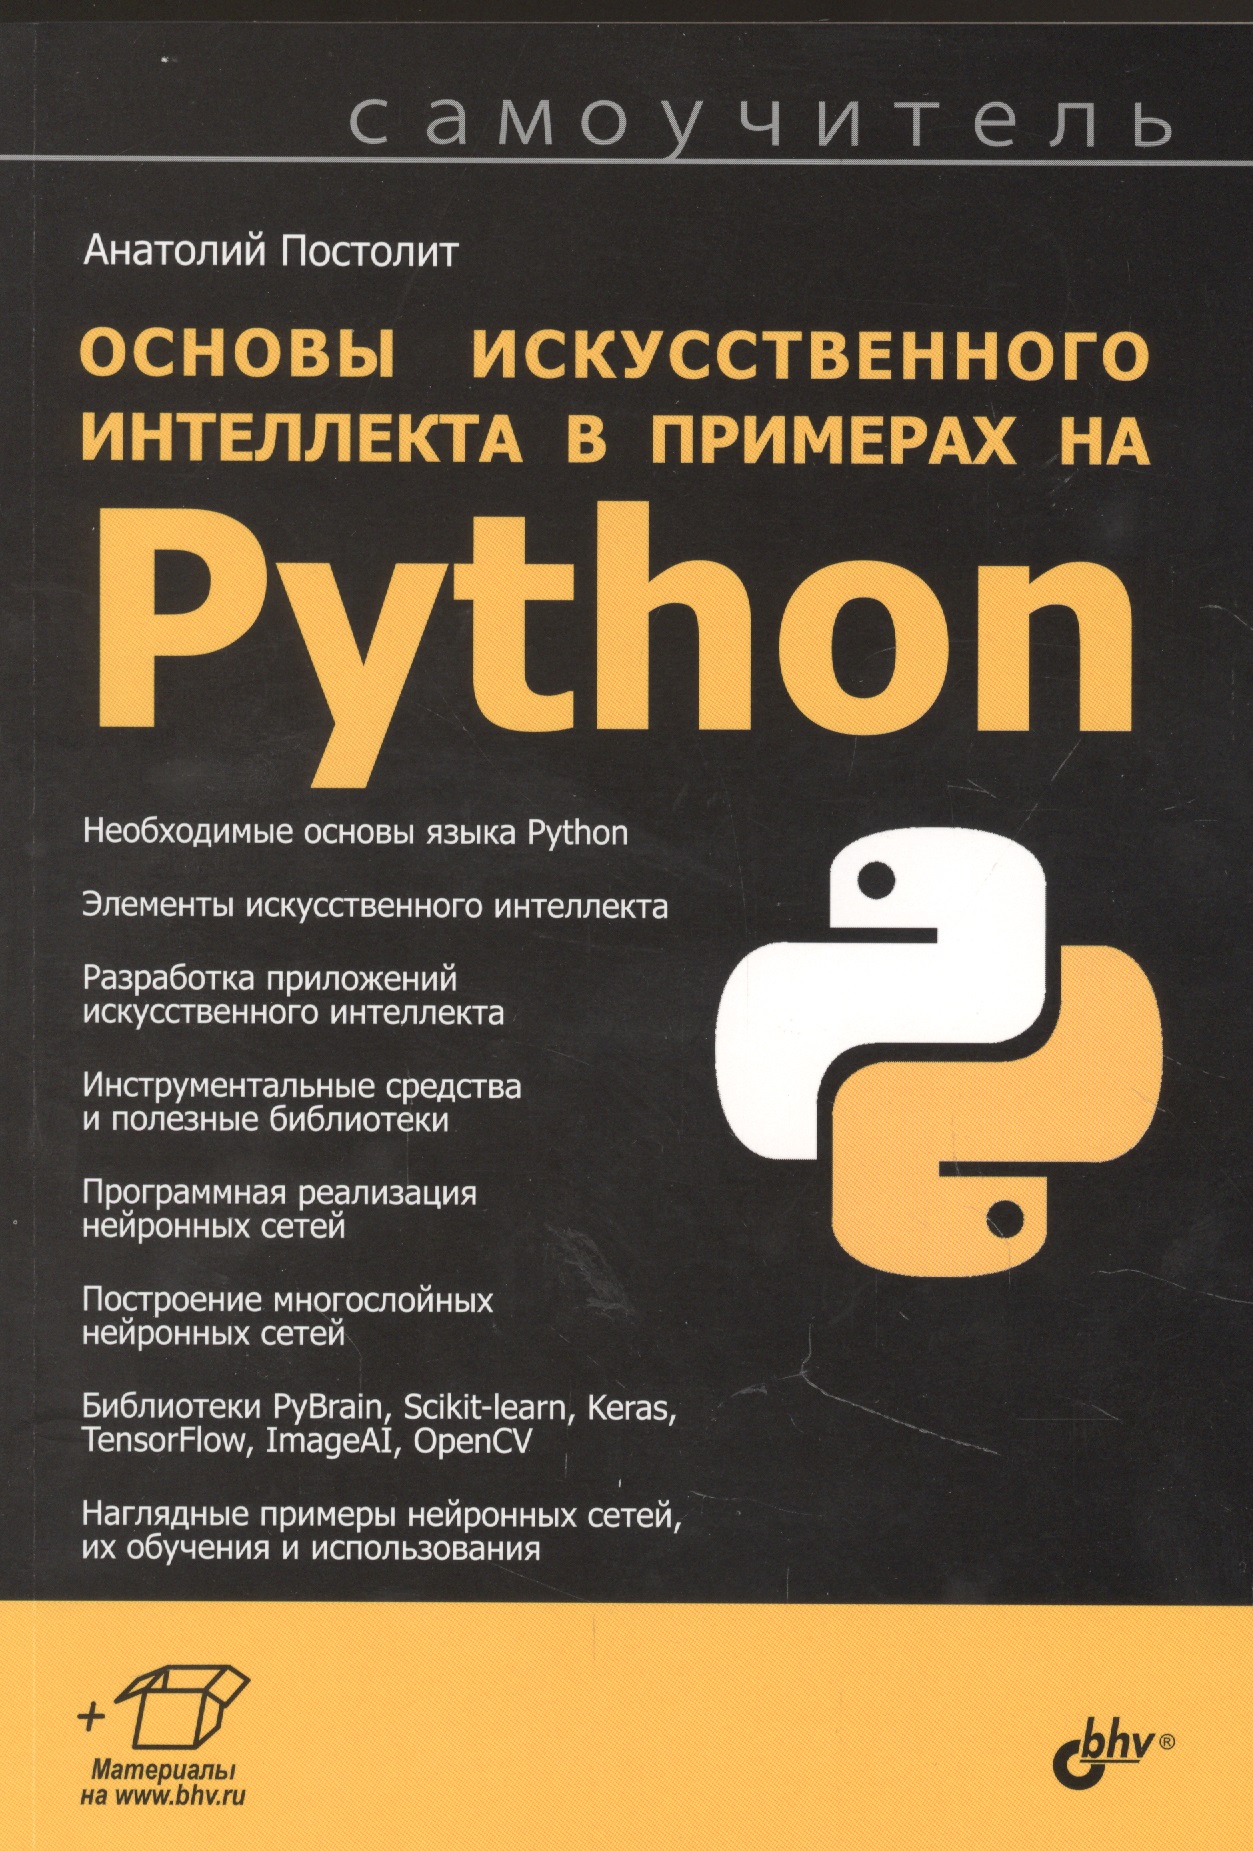 цена Постолит Анатолий Основы искусственного интеллекта в примерах на Python. Самоучитель